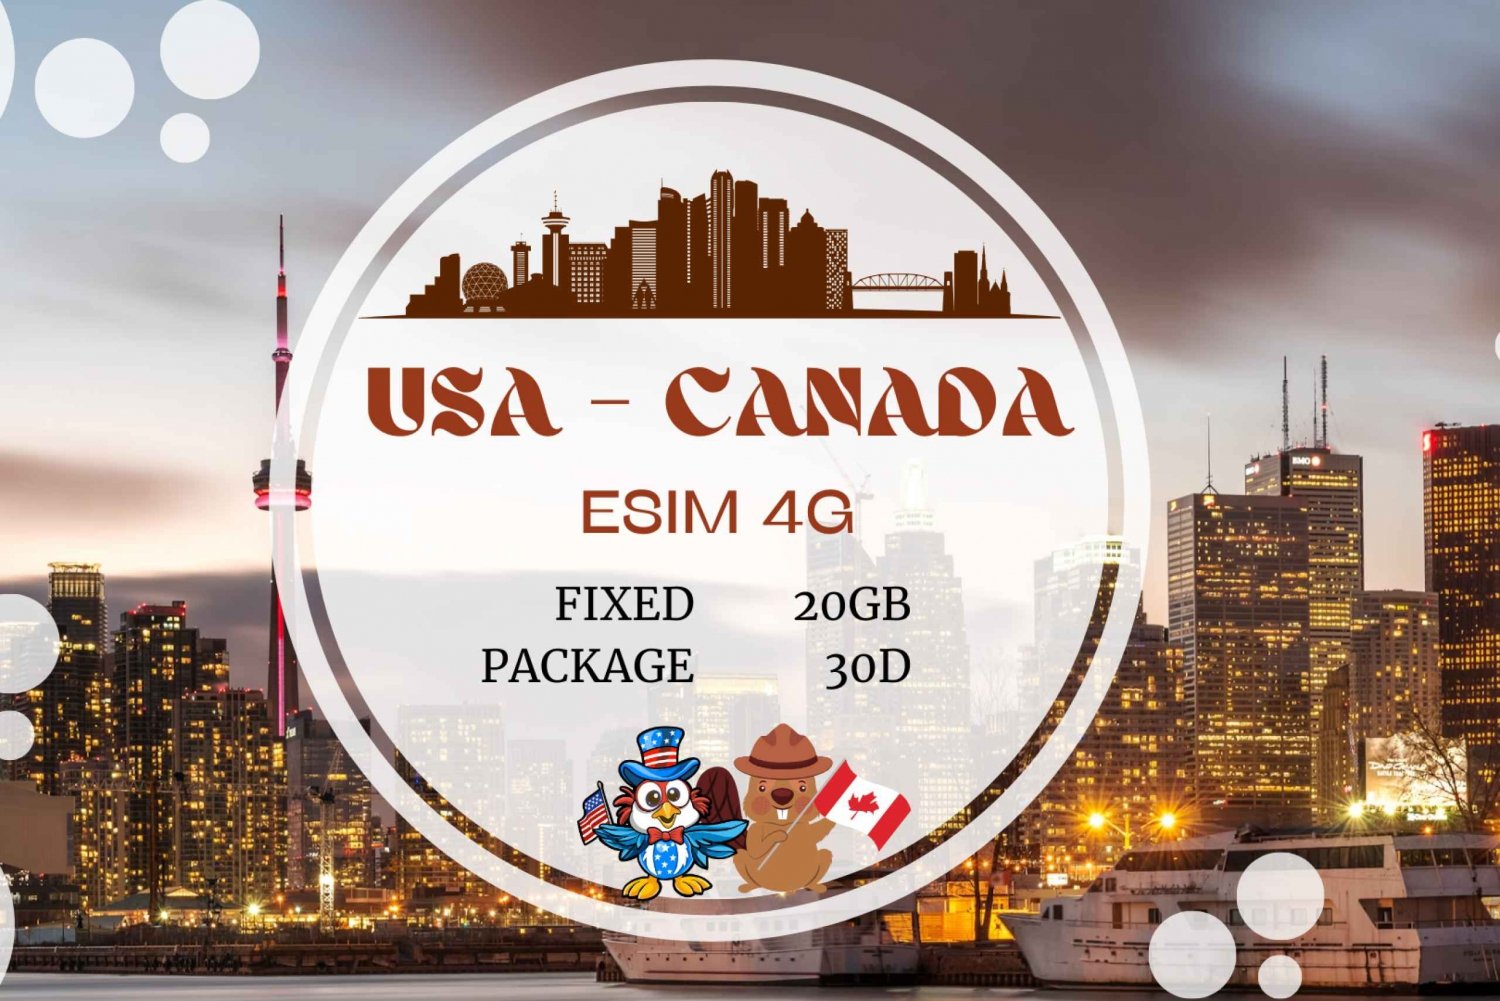 Kanada & USA: eSIM Unbegrenzte Daten für Touristen und Reisende